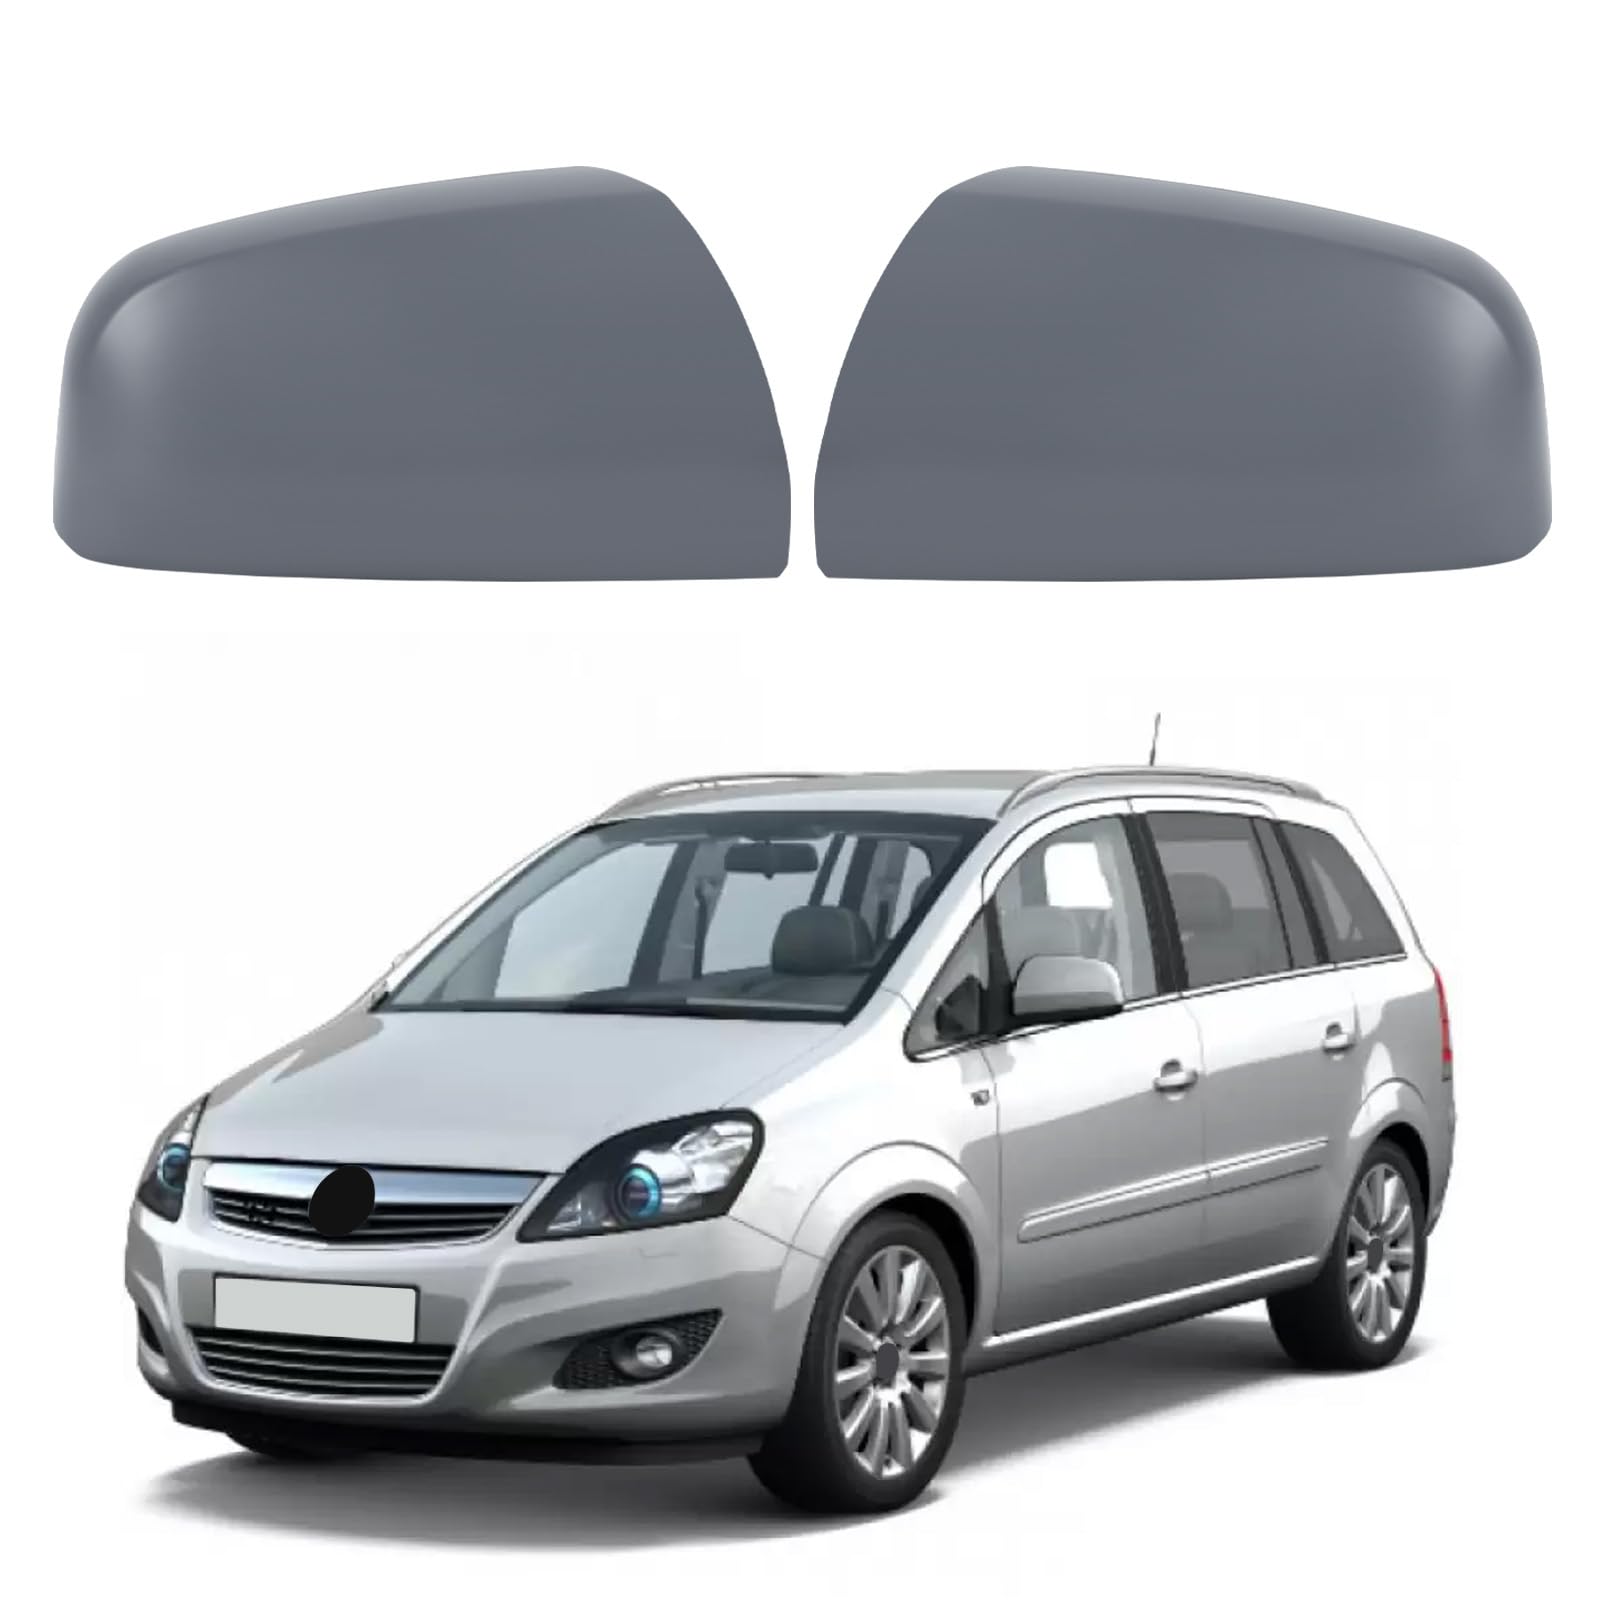 Auto Spiegelkappen, 1 Paar Auto Tür Außenspiegelkappe Rückspiegelkappe Seitenspiegel Abdeckungen für 2009-2014 Opel Zafira B (09-14 Zafira) von ConBlom